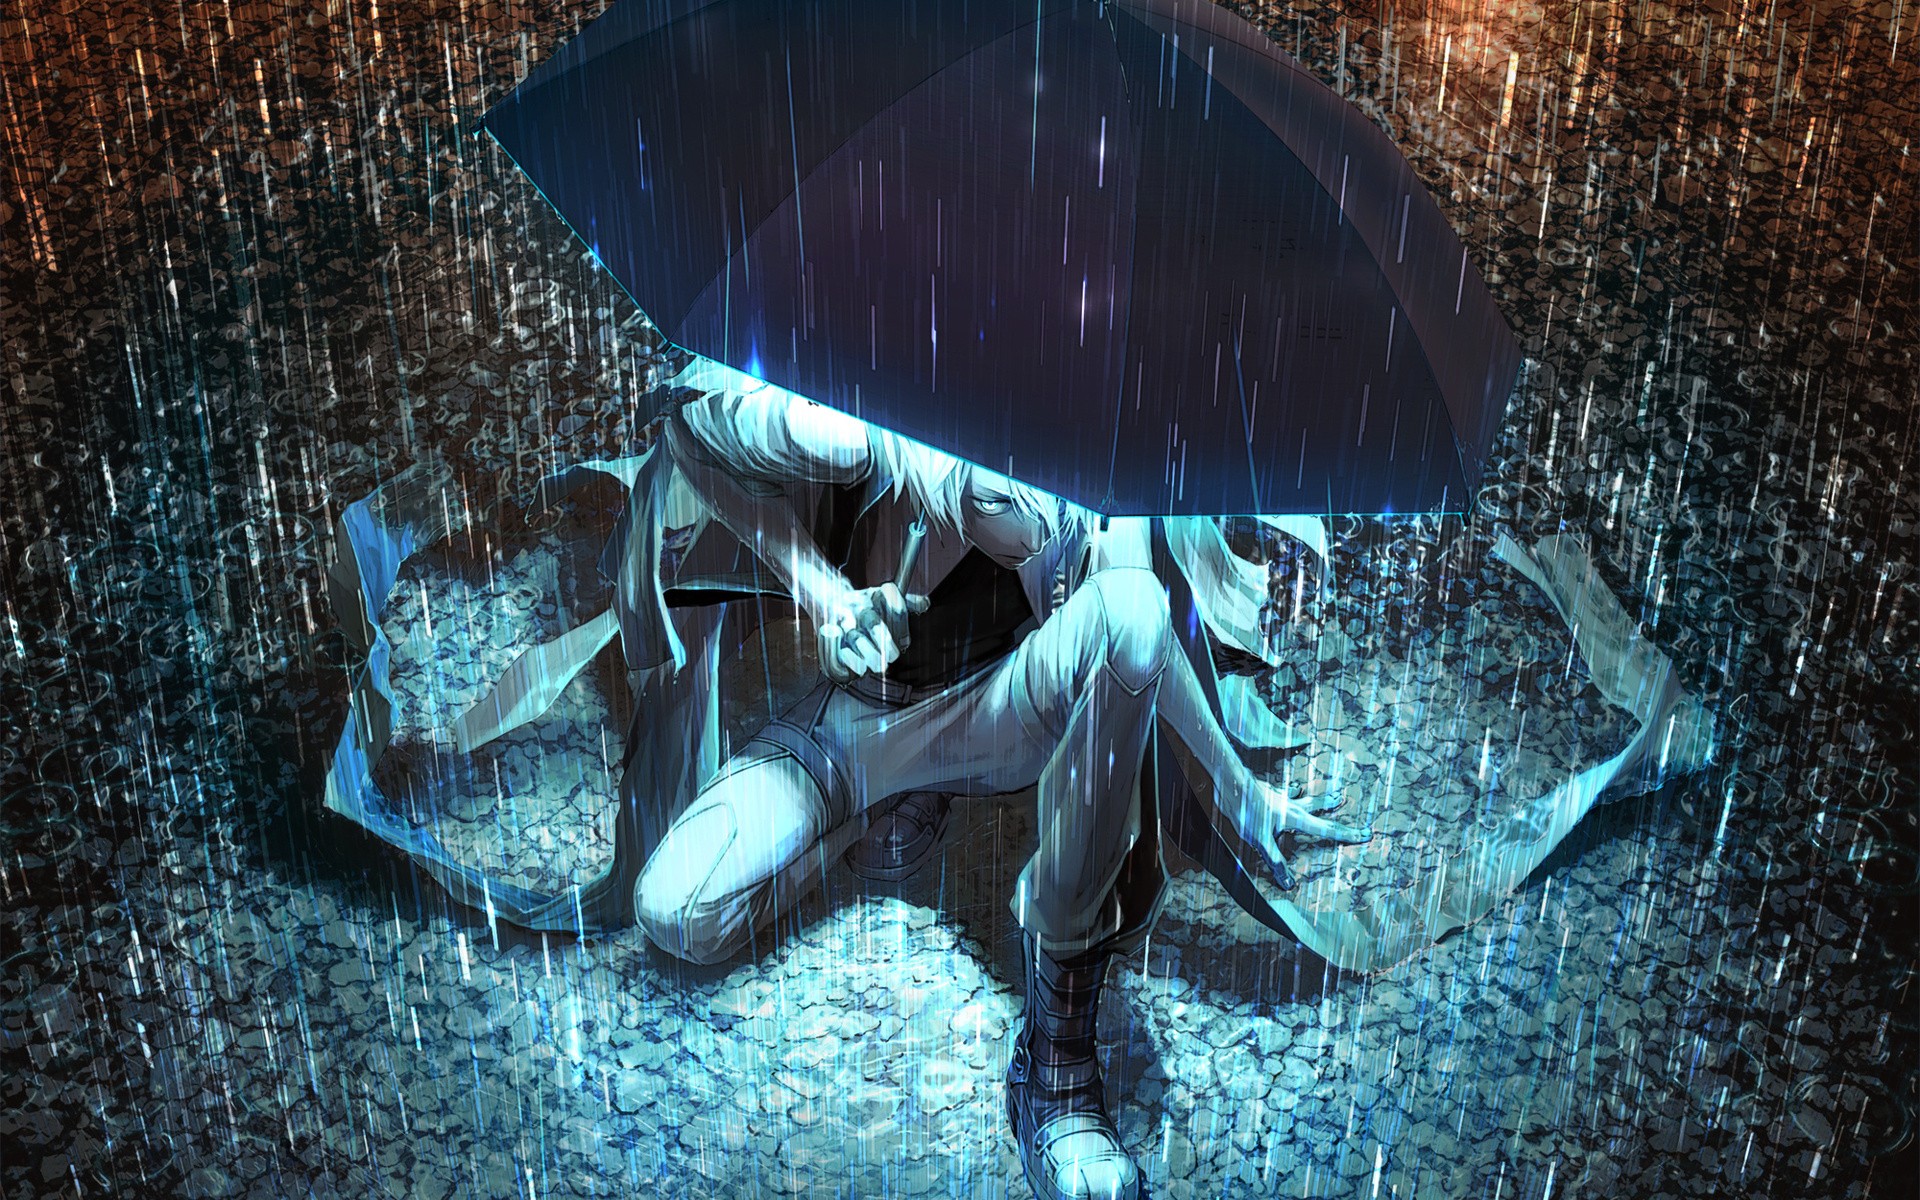 New Anime Wallpaper in Rain with Umbrella